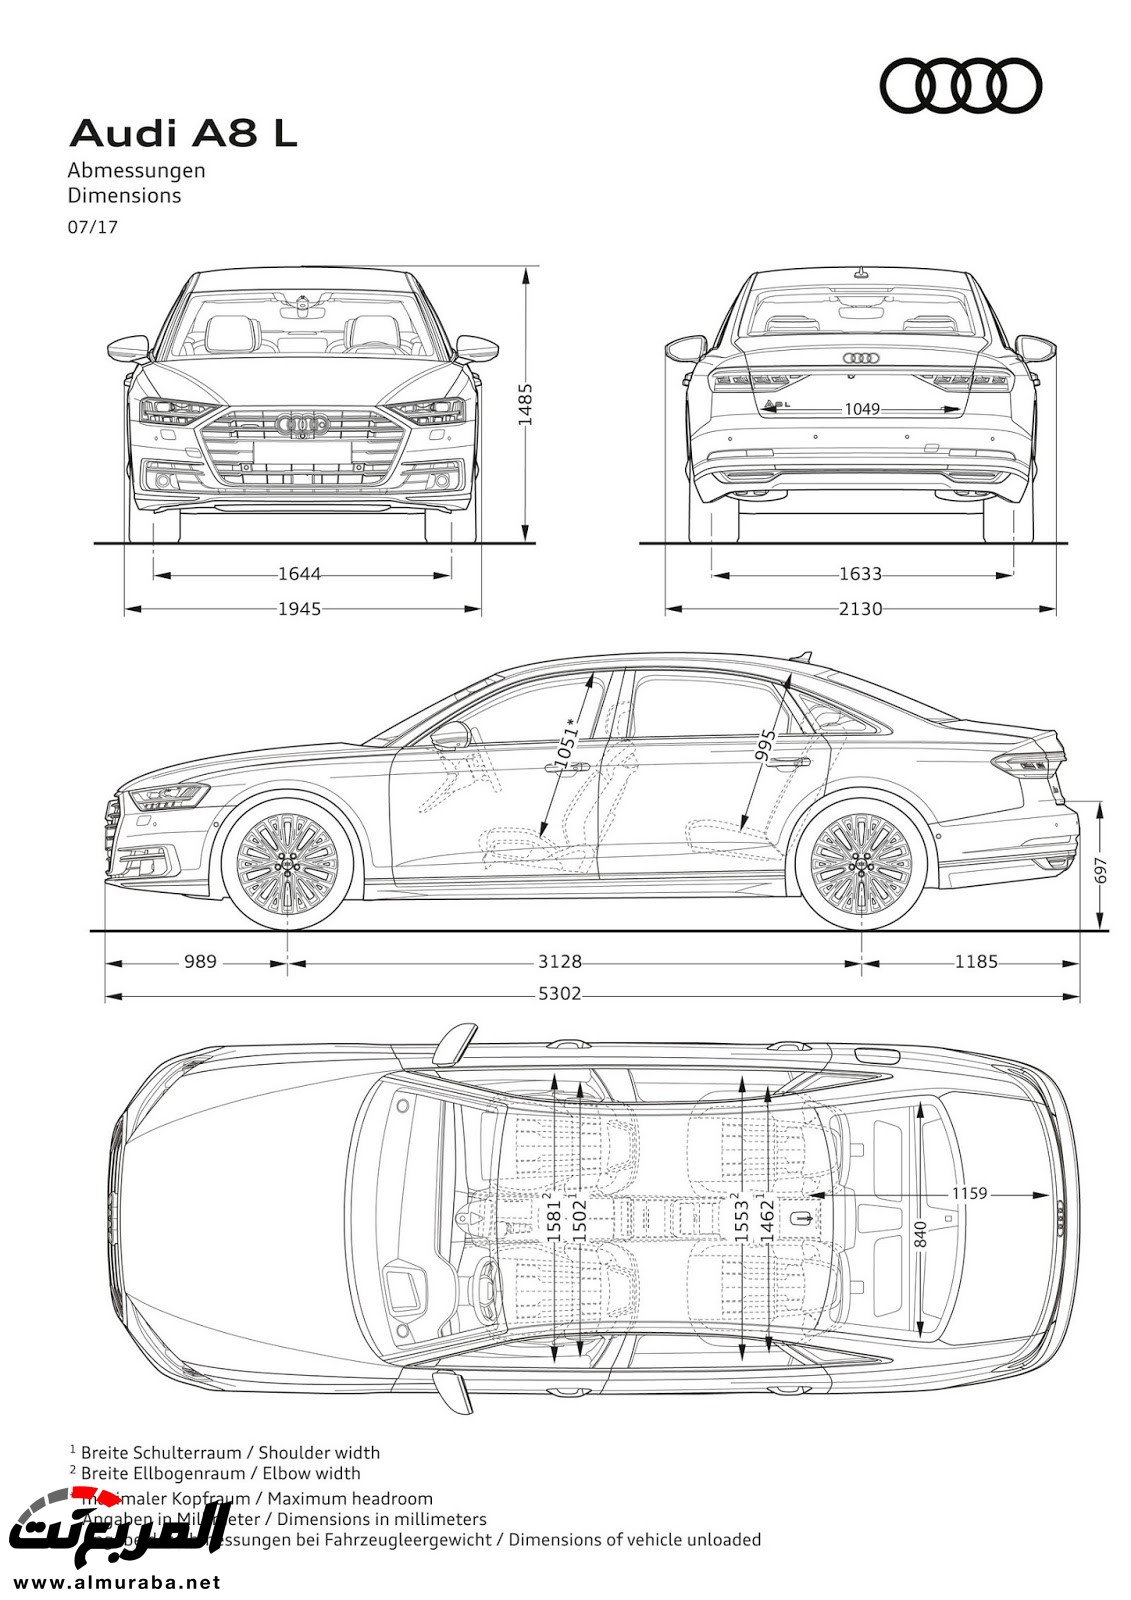 أودي A8 2018 الجديدة كلياً تكشف نفسها بتصميم وتقنيات متطورة "معلومات + 100 صورة" Audi A8 112